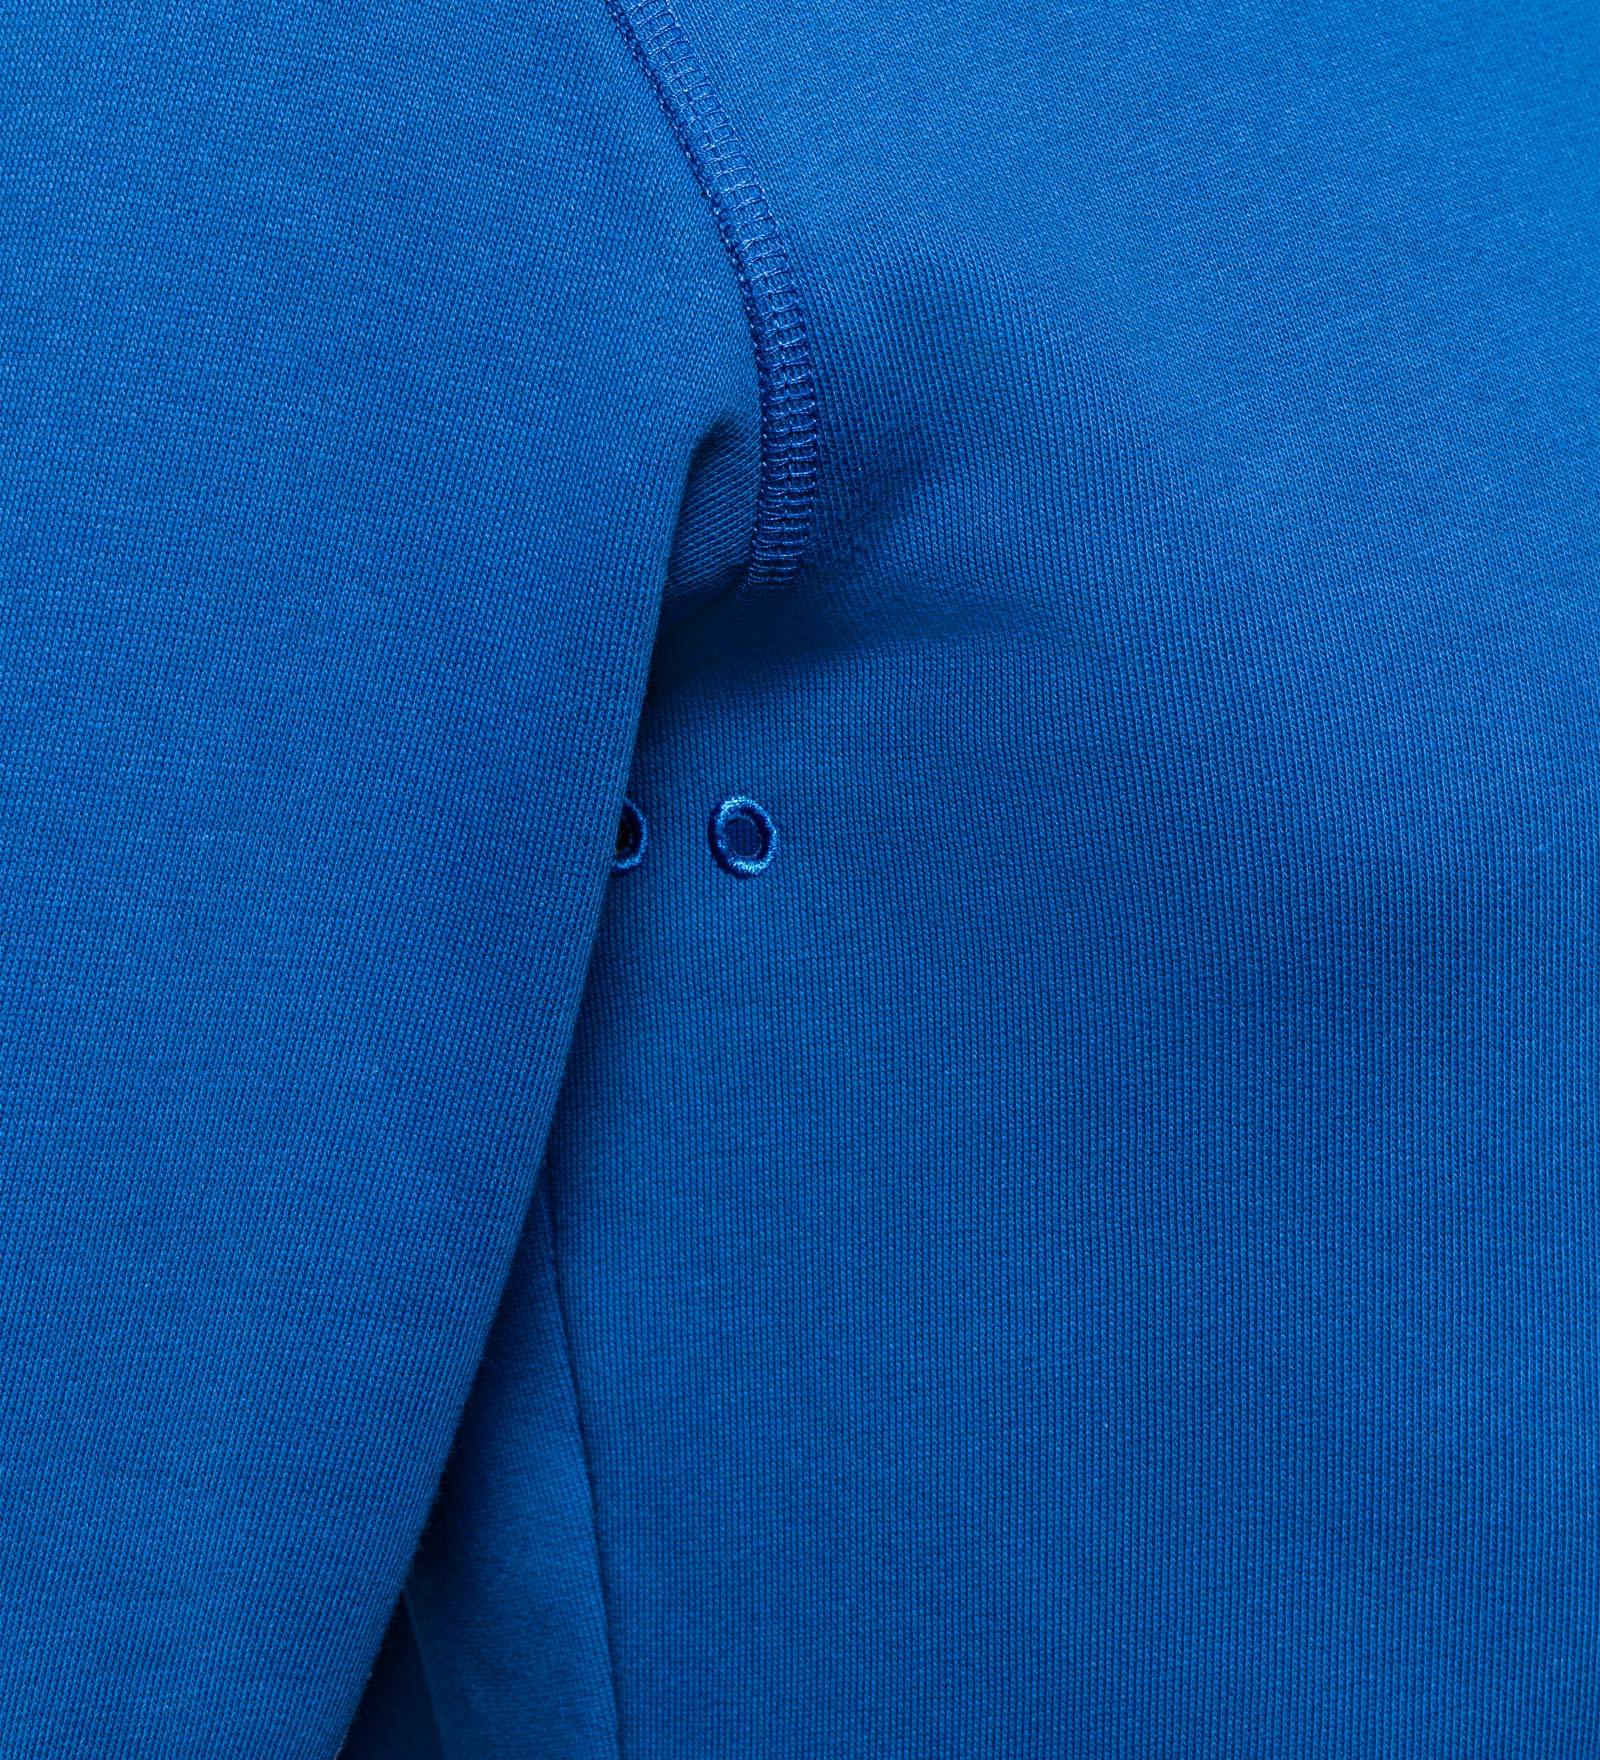 CODE-ZERO Sweatshirt Men Upwind Blue | CODE-ZERO XXL